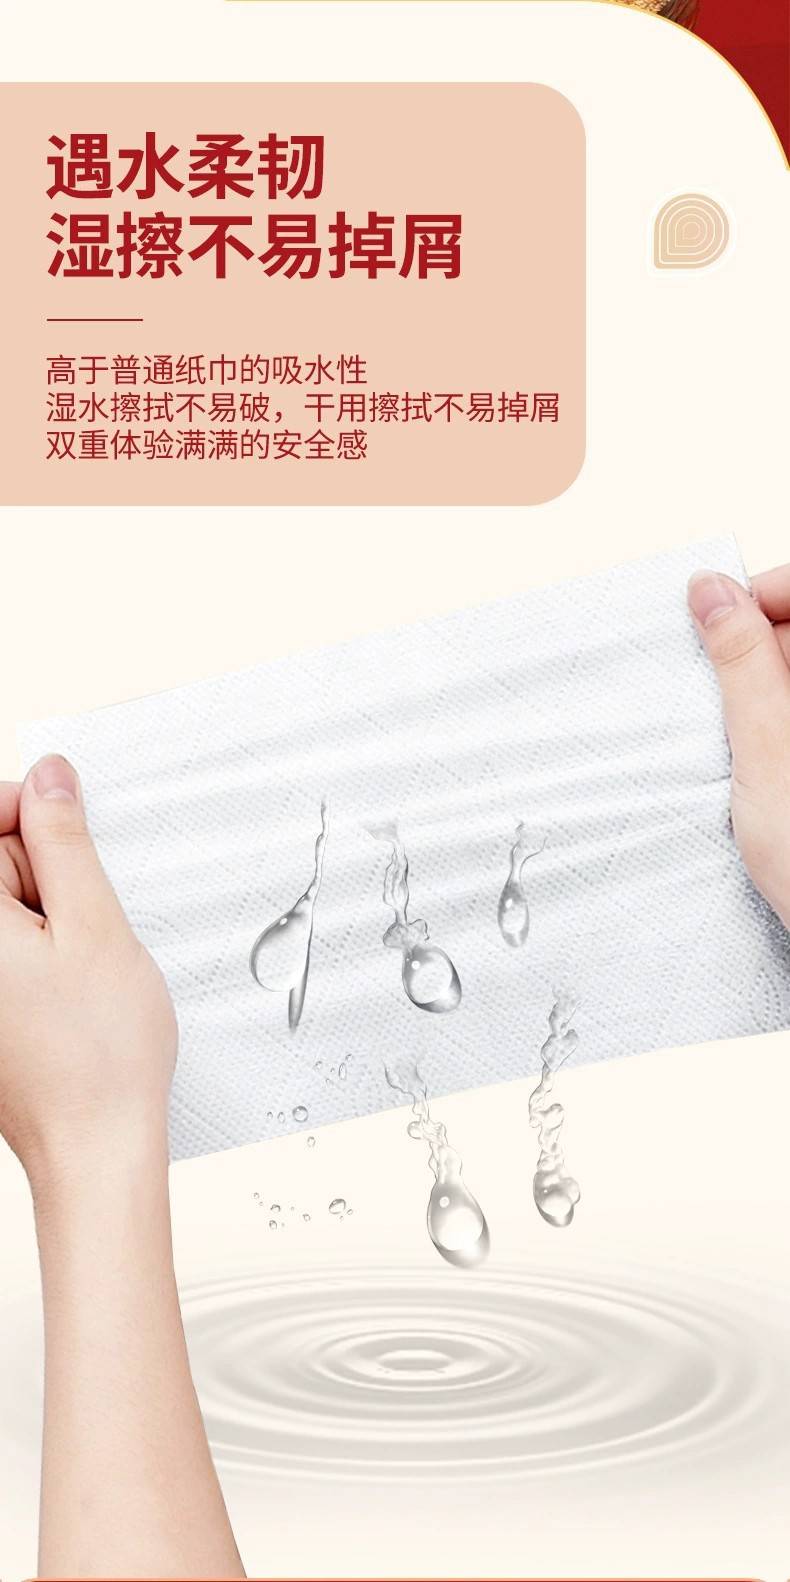 【4提】暴富挂抽悬挂式抽纸家用卫生纸亲肤柔软面巾纸厕所纸巾